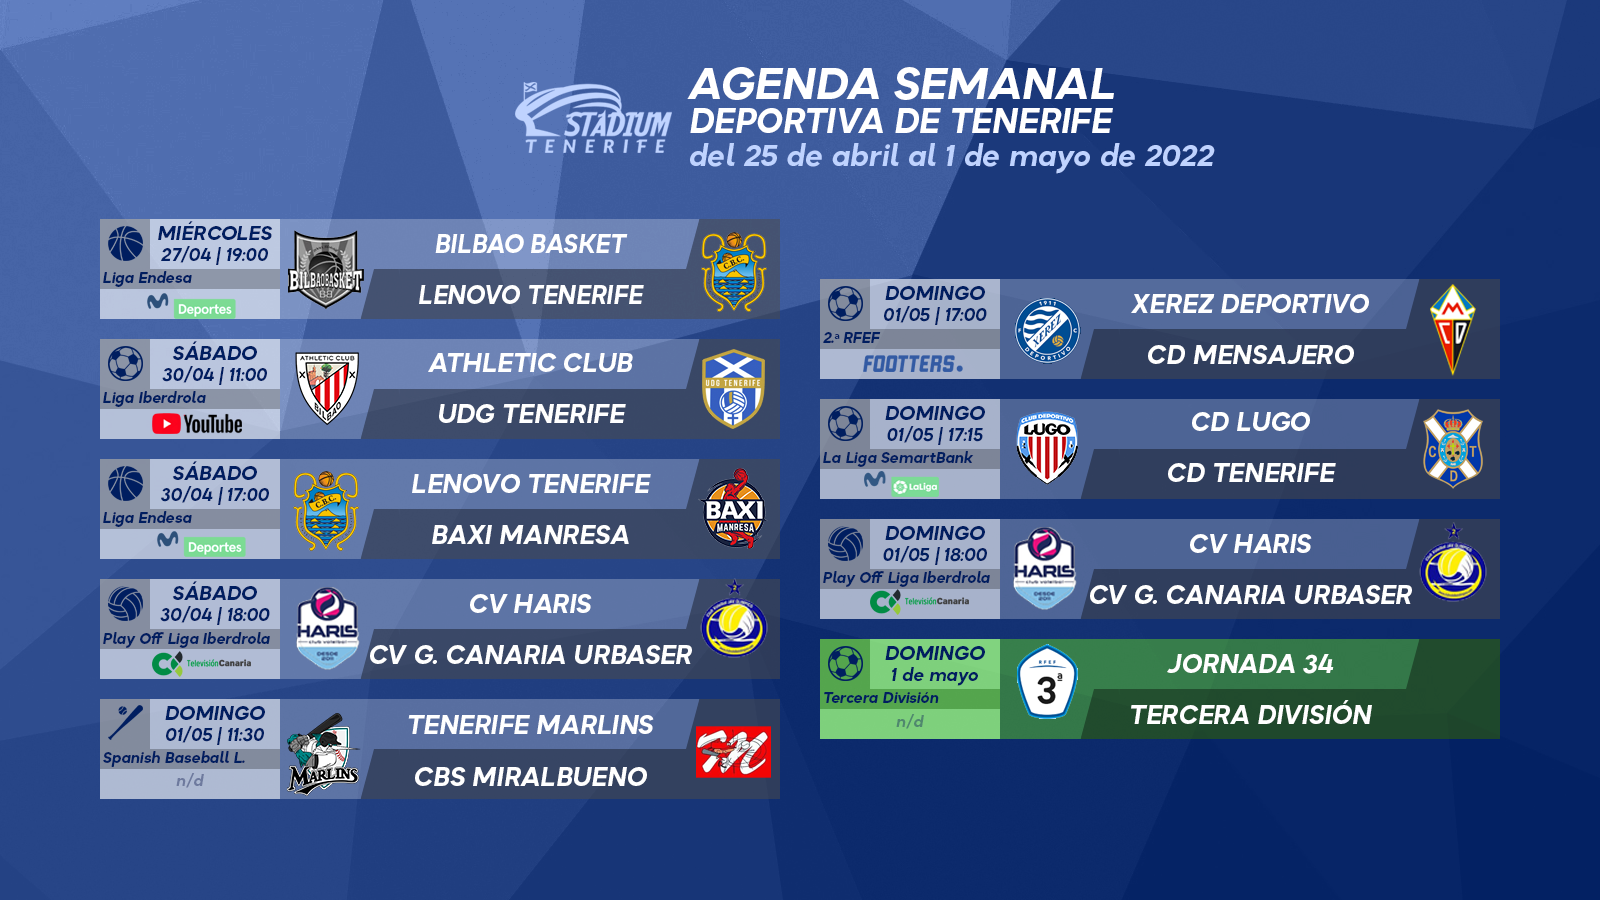 Agenda Semanal Deportiva de Tenerife (25 de abril al 1 de mayo)